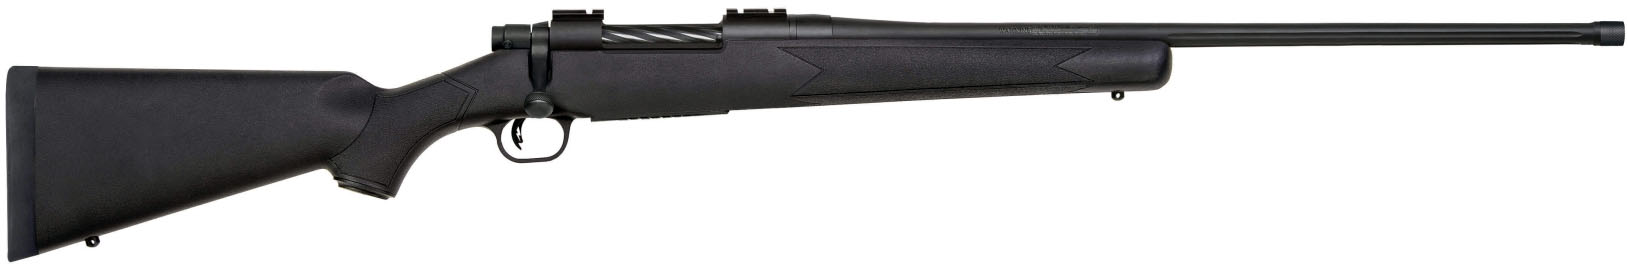 Rifle de cerrojo MOSSBERG Patriot Synthetic con rosca - 7mm. Rem. Mag.